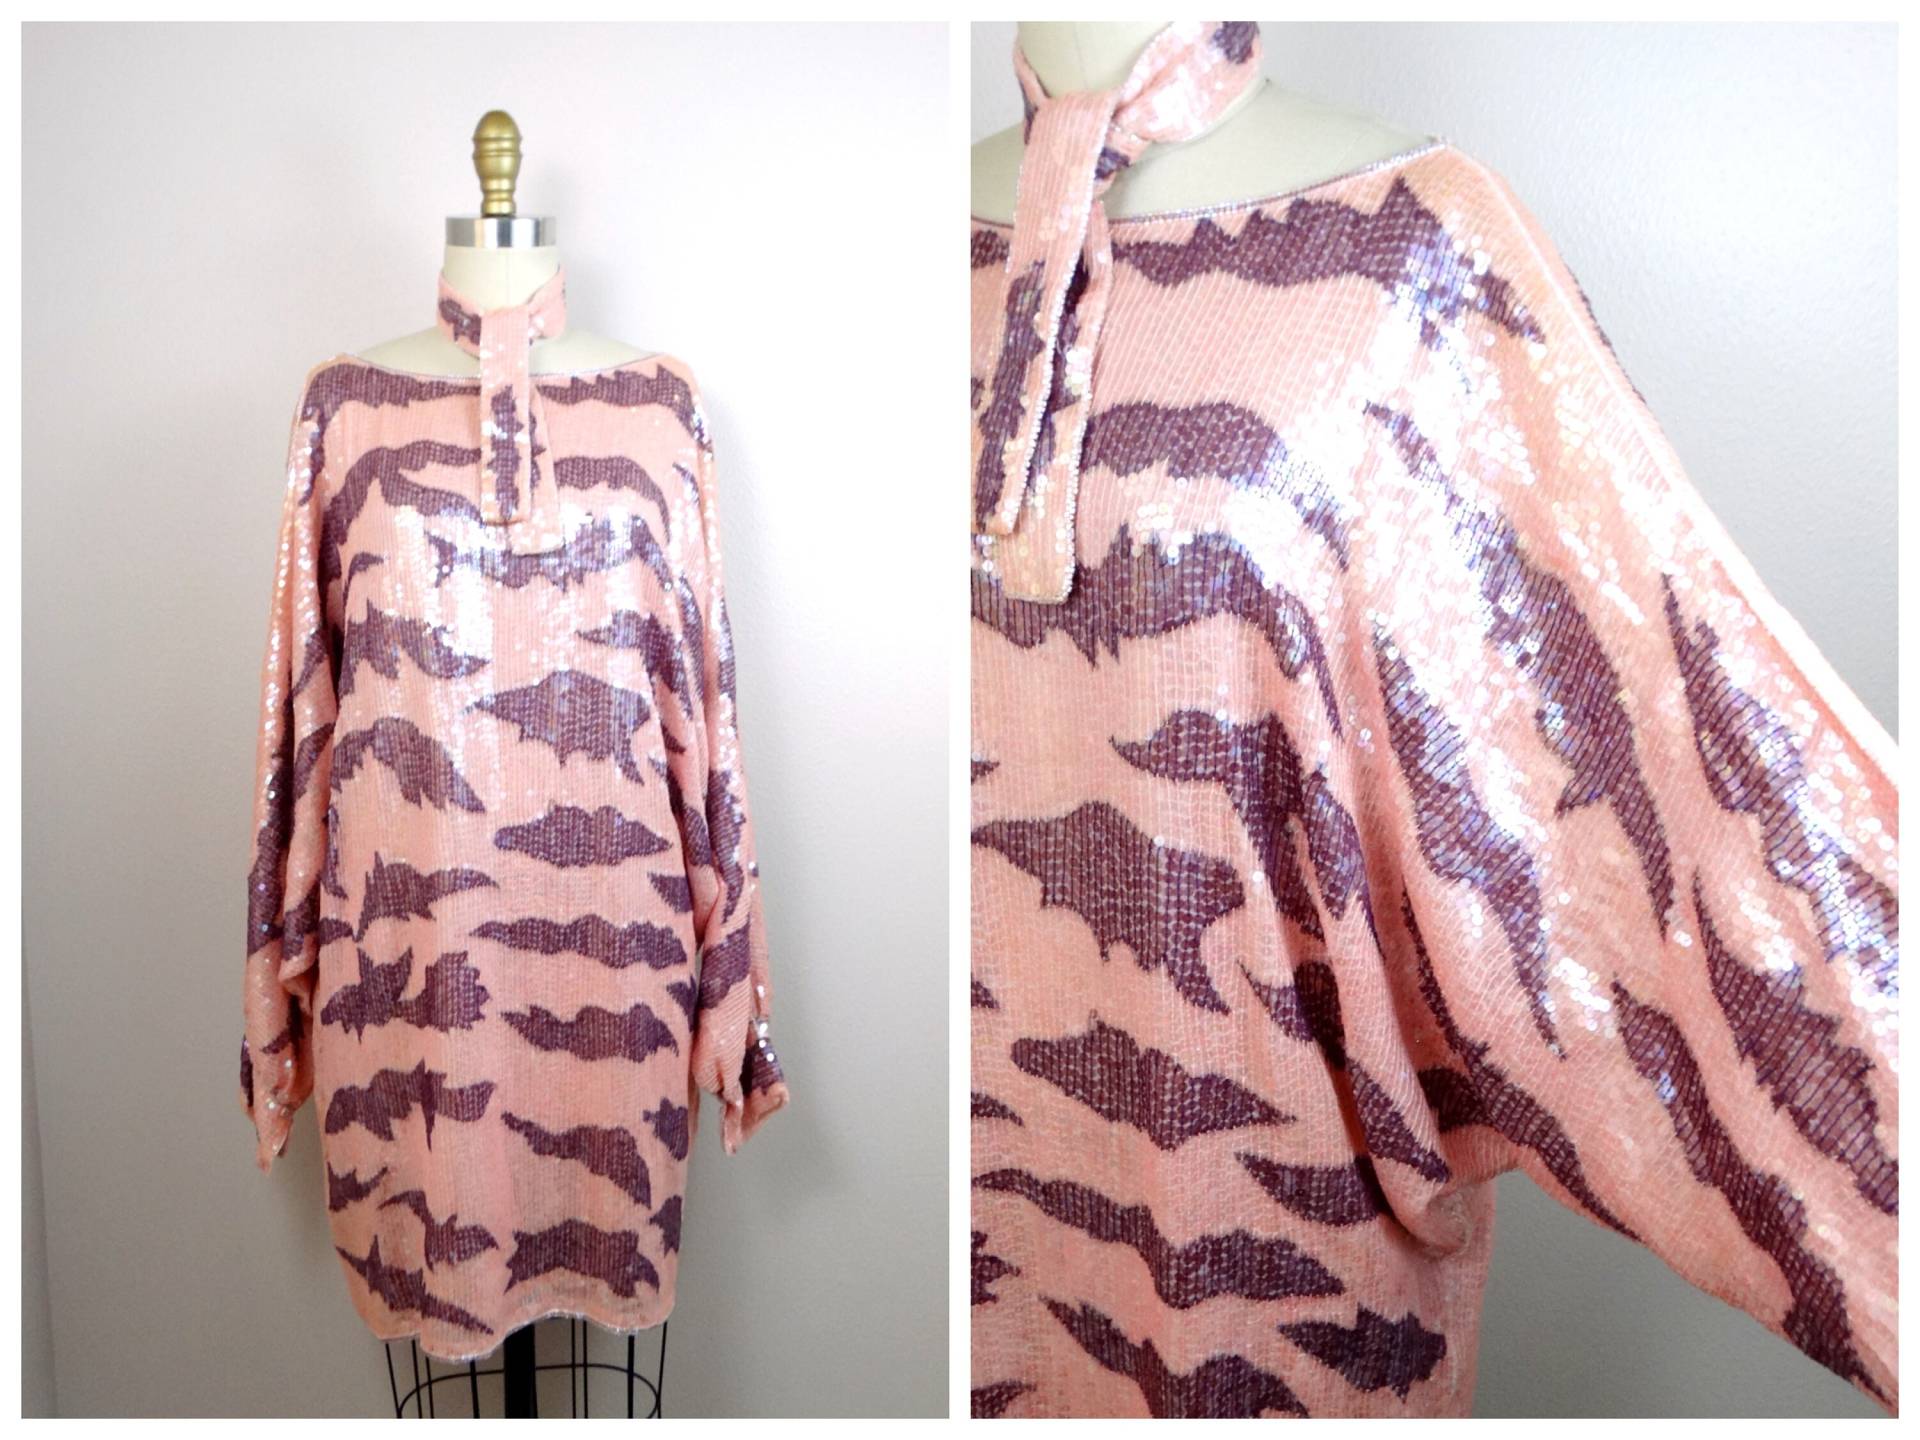 Rare Couture Pailletten Mini Kleid/Pastell Rosa Und Lila Perlen Oversized Tunika Top Oder von braxae